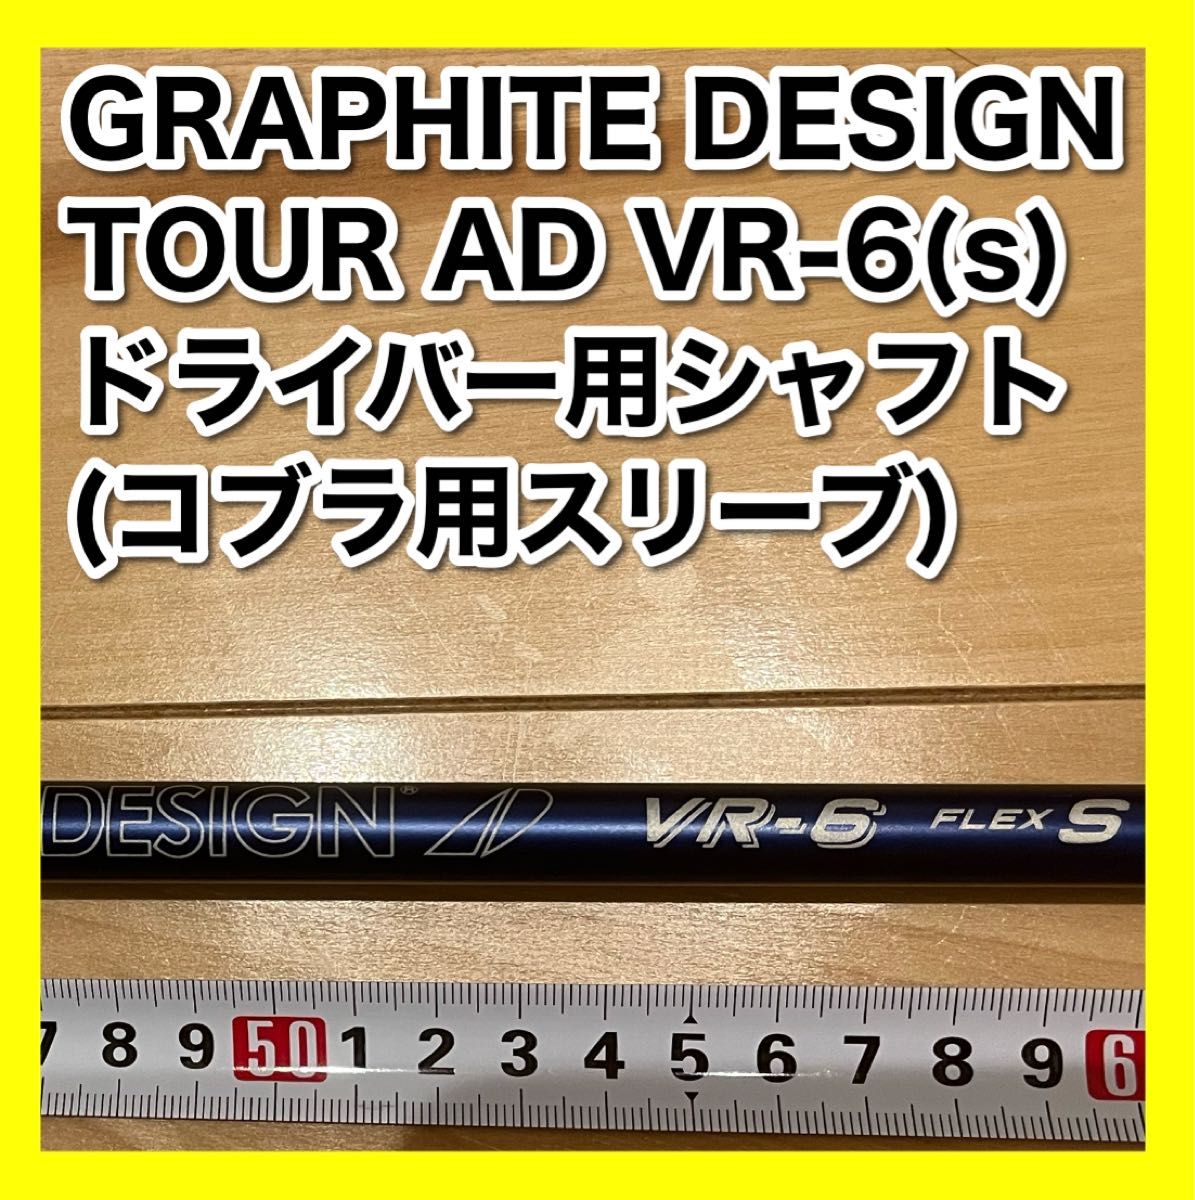 【ドライバー用シャフト】TOUR AD VR-6(s) / コブラ用スリーブ付